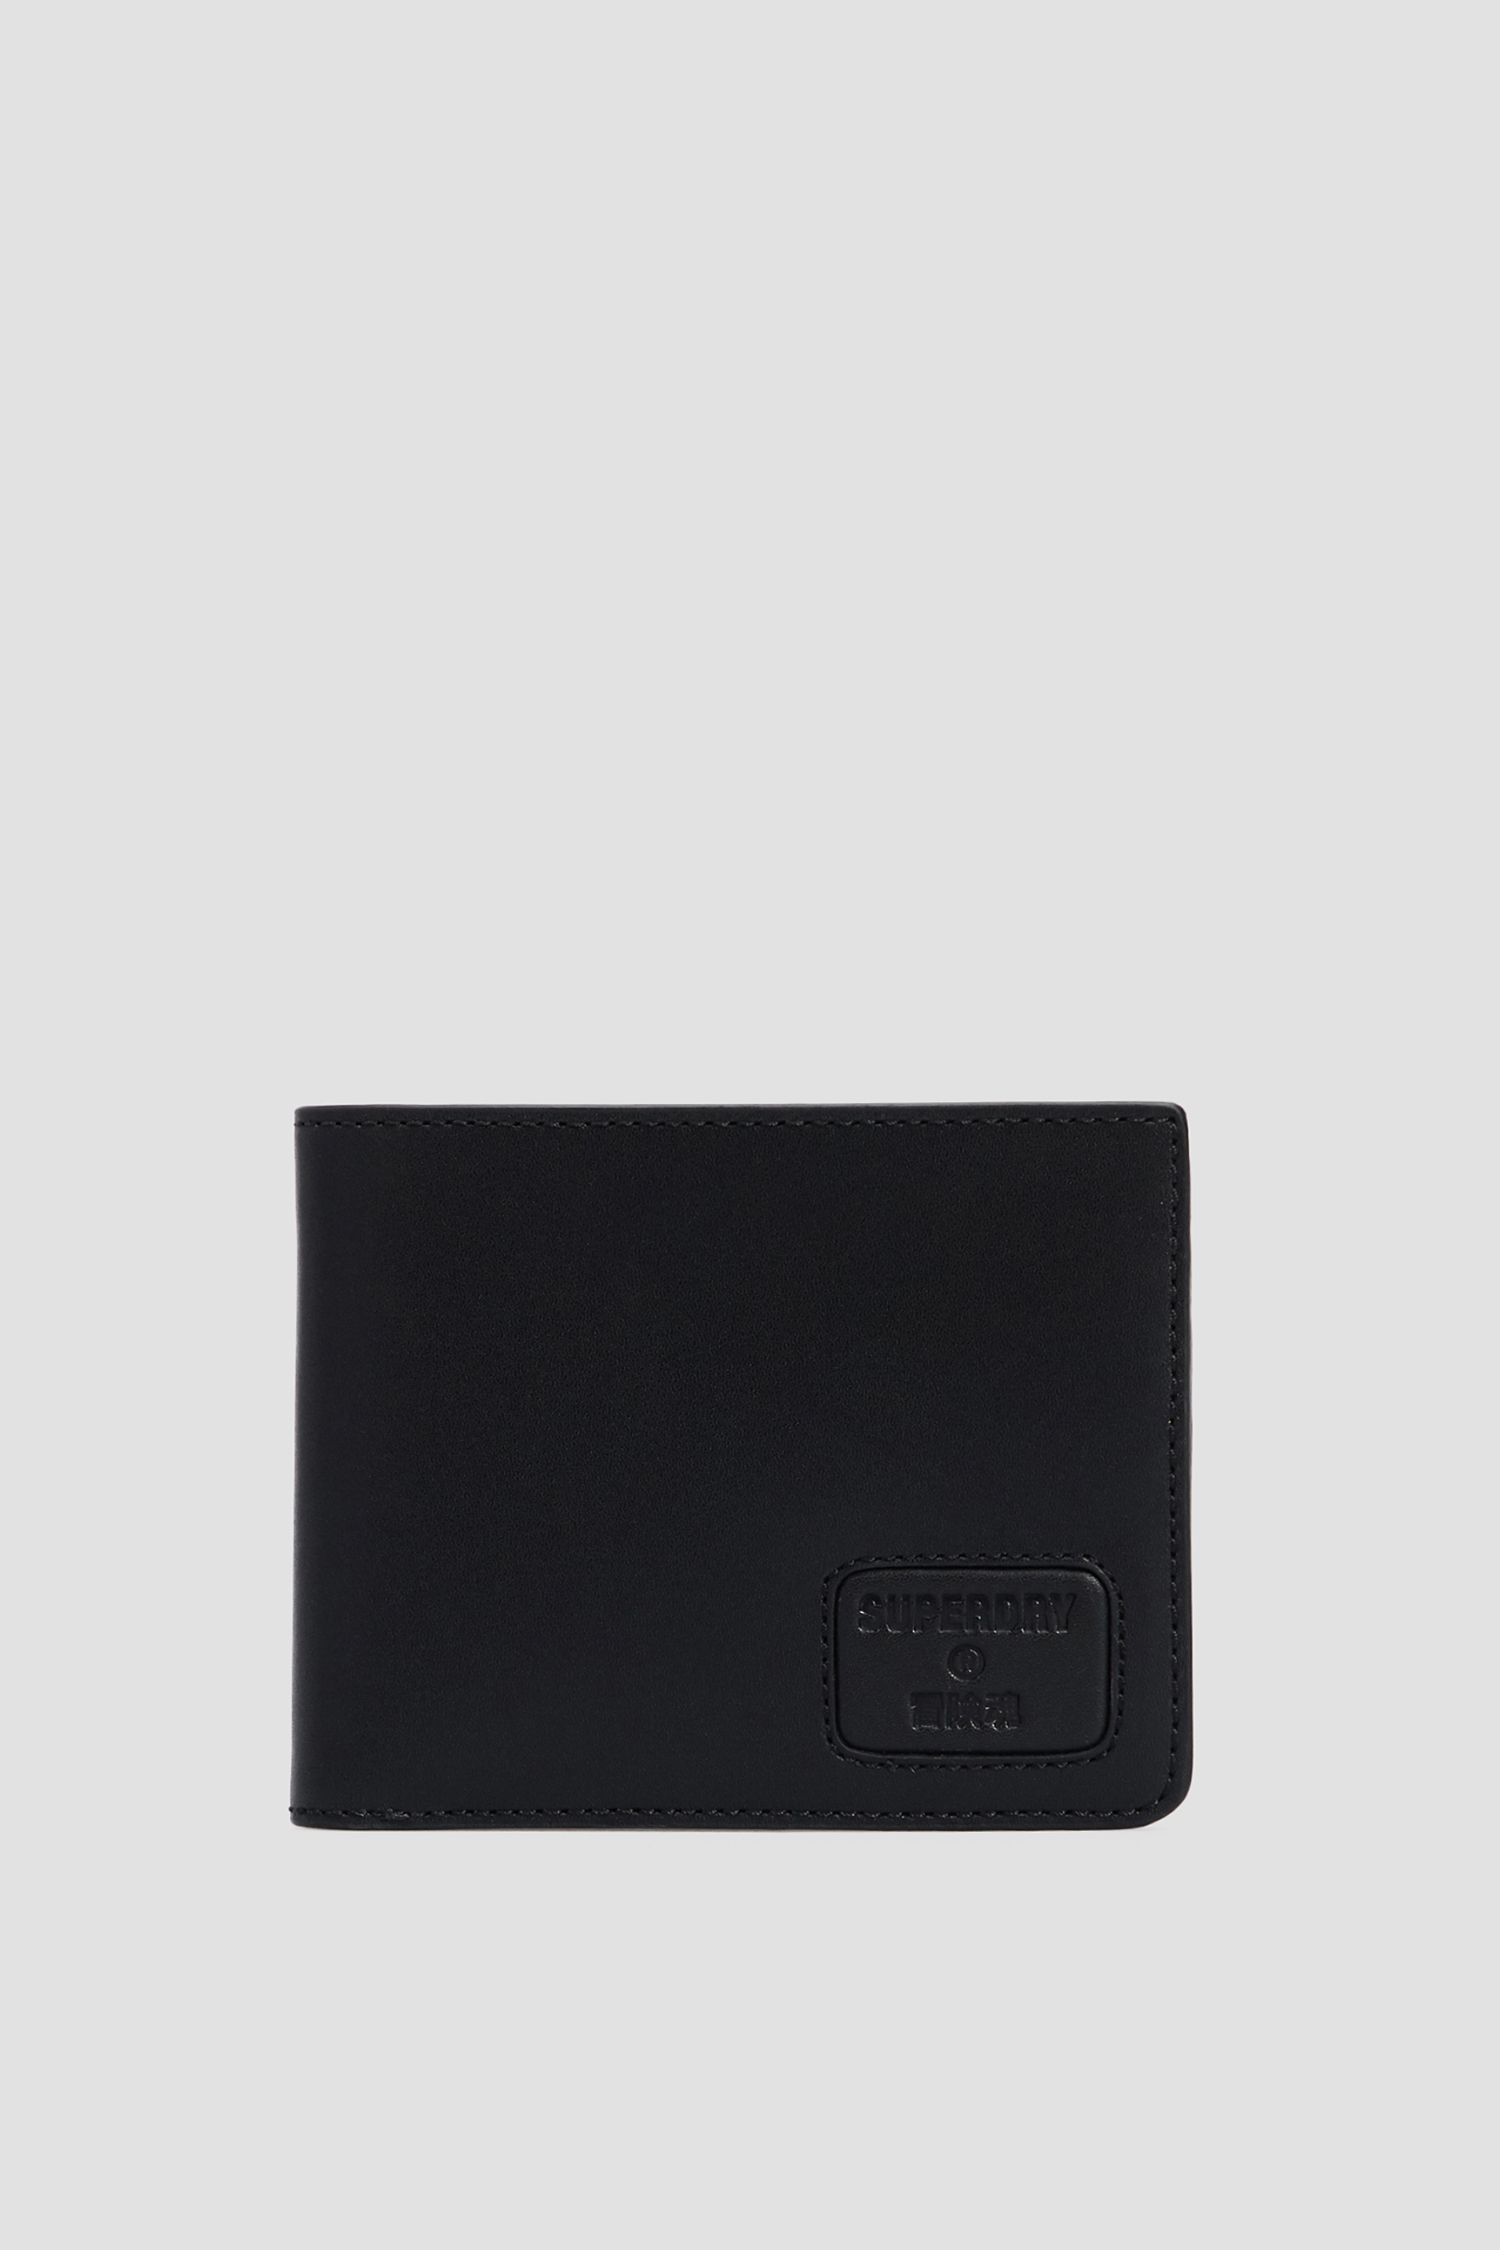 Черный кожаный кошелек для парней SuperDry M9810144A;02A